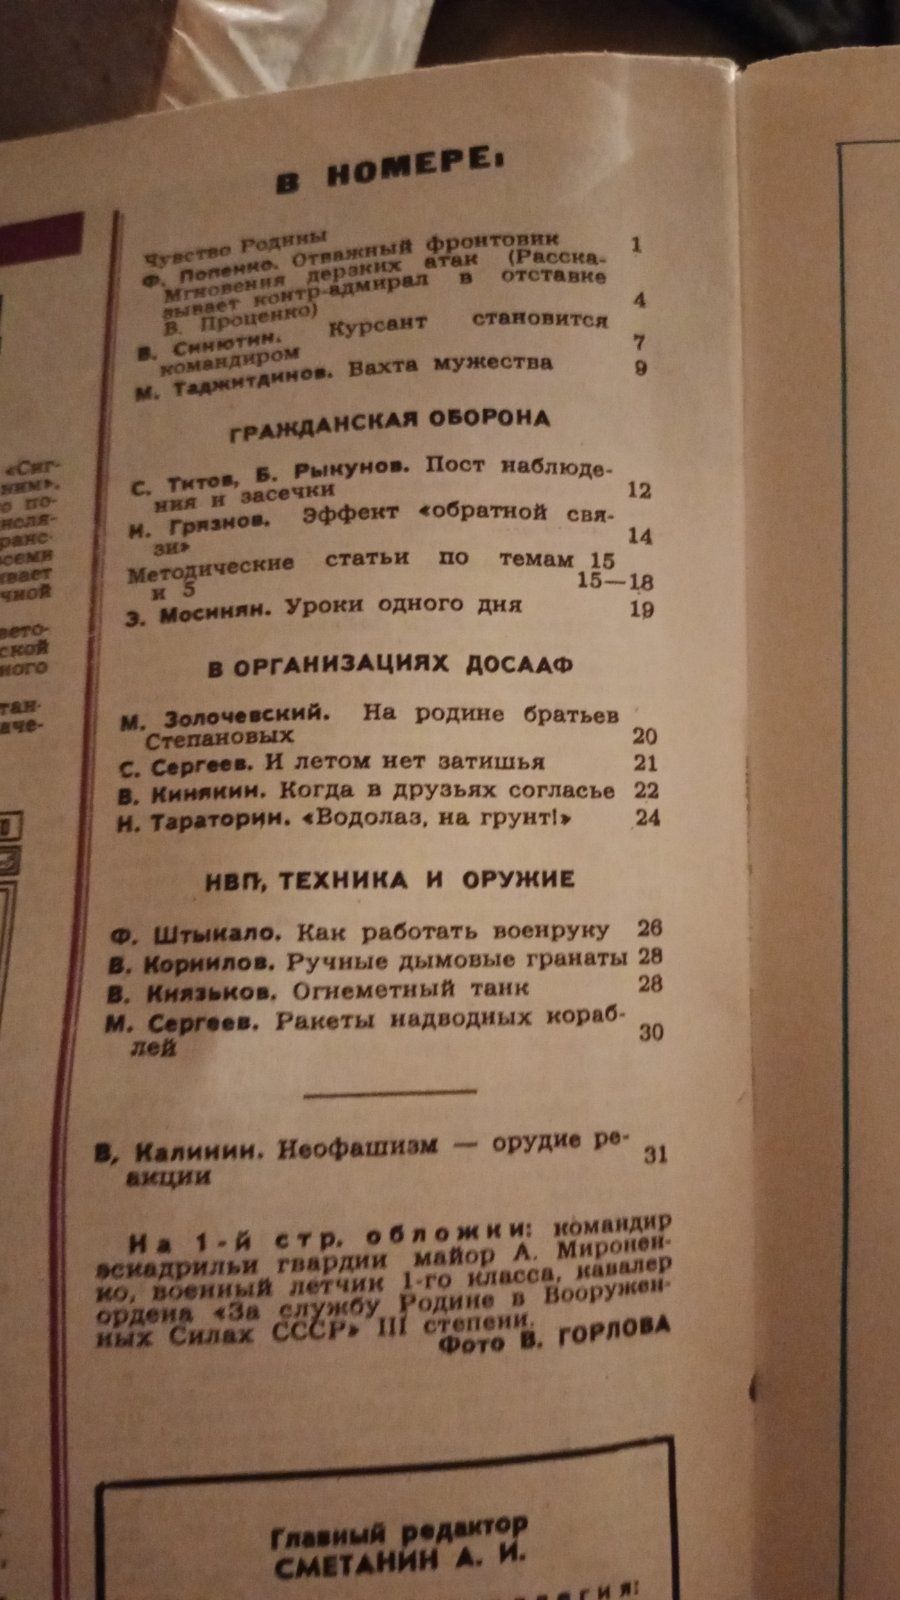 Журнал Военные знания 1988, 1984 год СССР винтаж